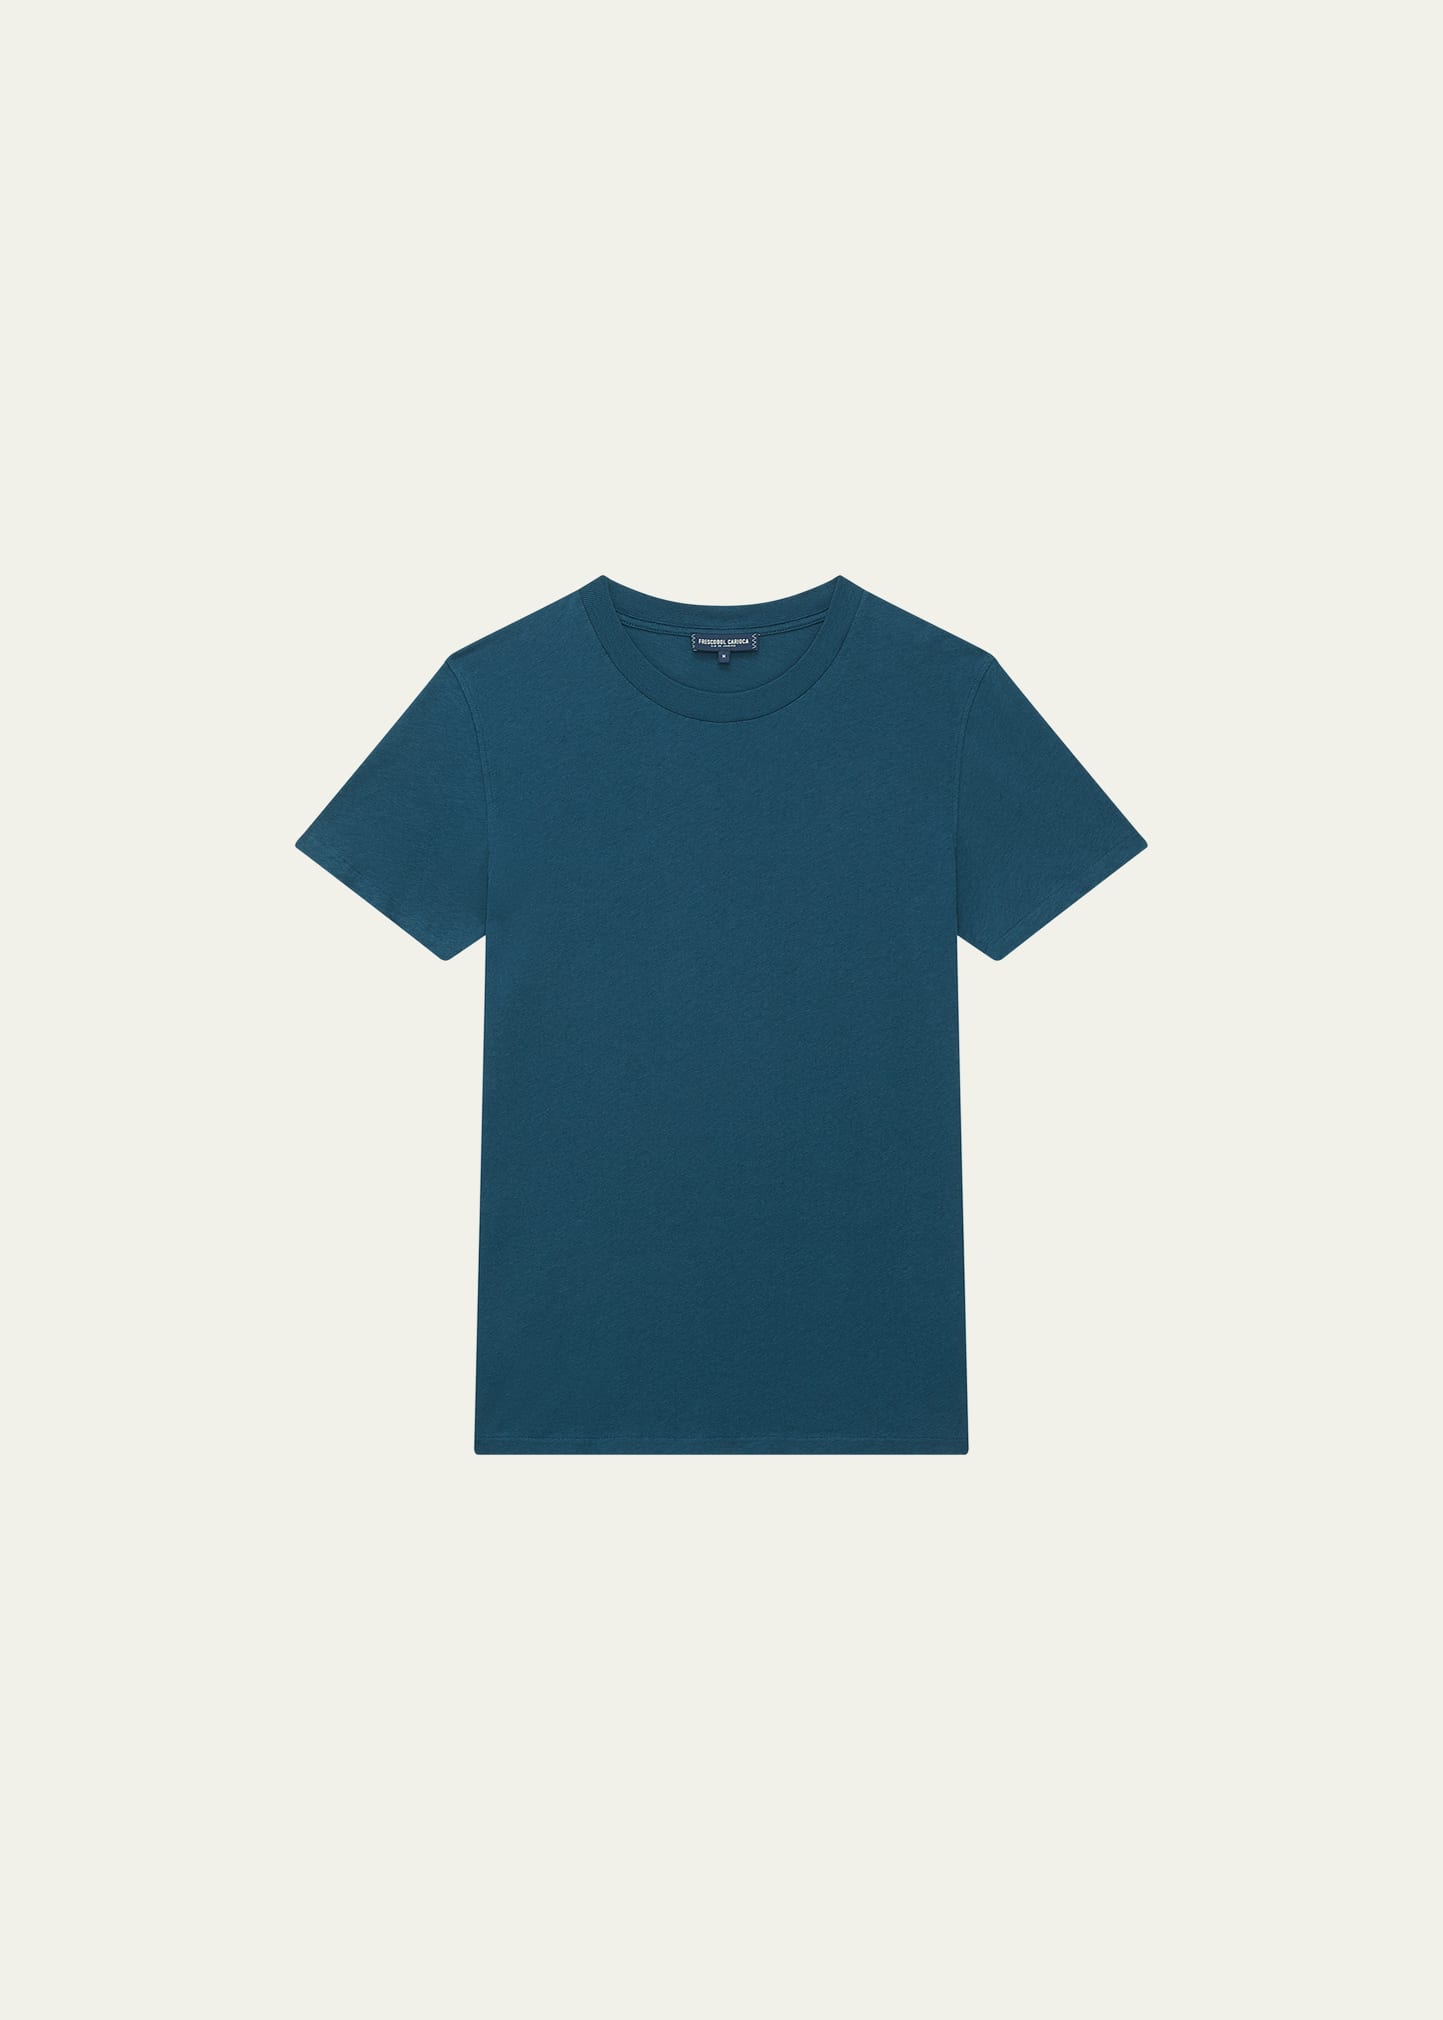 Frescobol Carioca Men's Cotton Linen Short-sleeve T-shirt In Perennial Blue 75